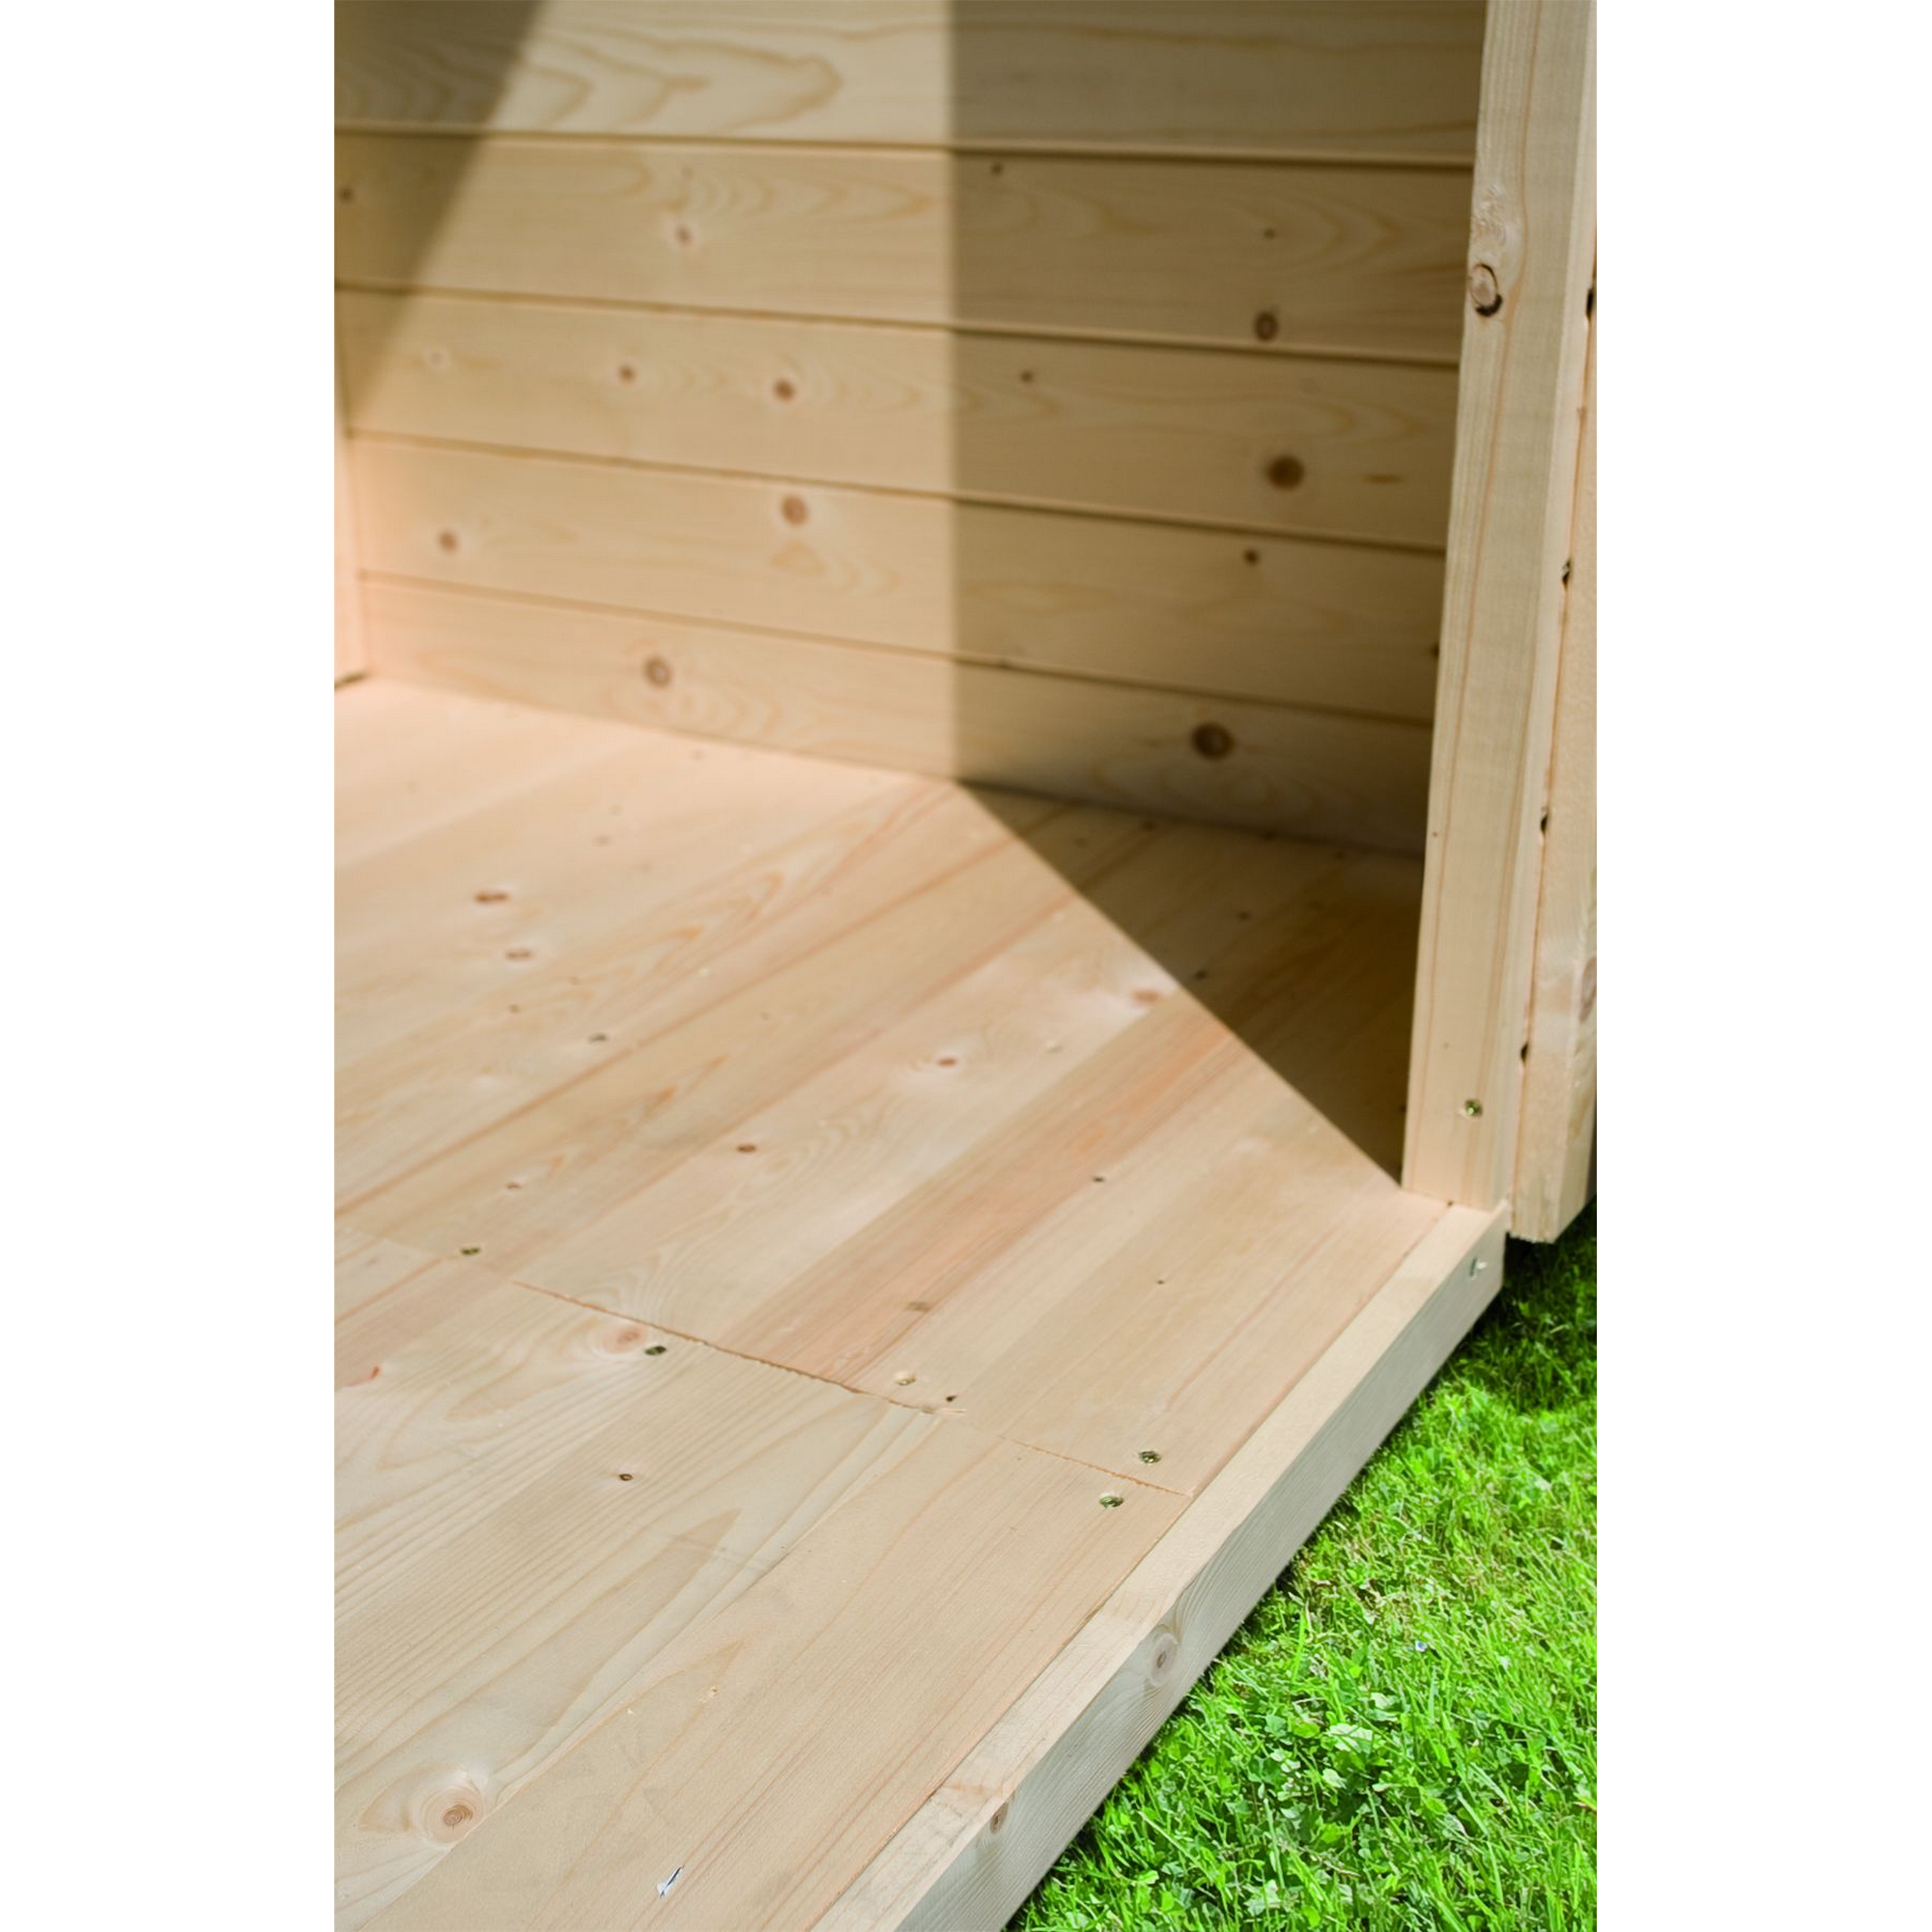 Gartenhaus mit Sauna 'Alberto' terragrau 9 kW Bio-Ofen externe Steuerung 304 x 304 x 250 cm + product picture